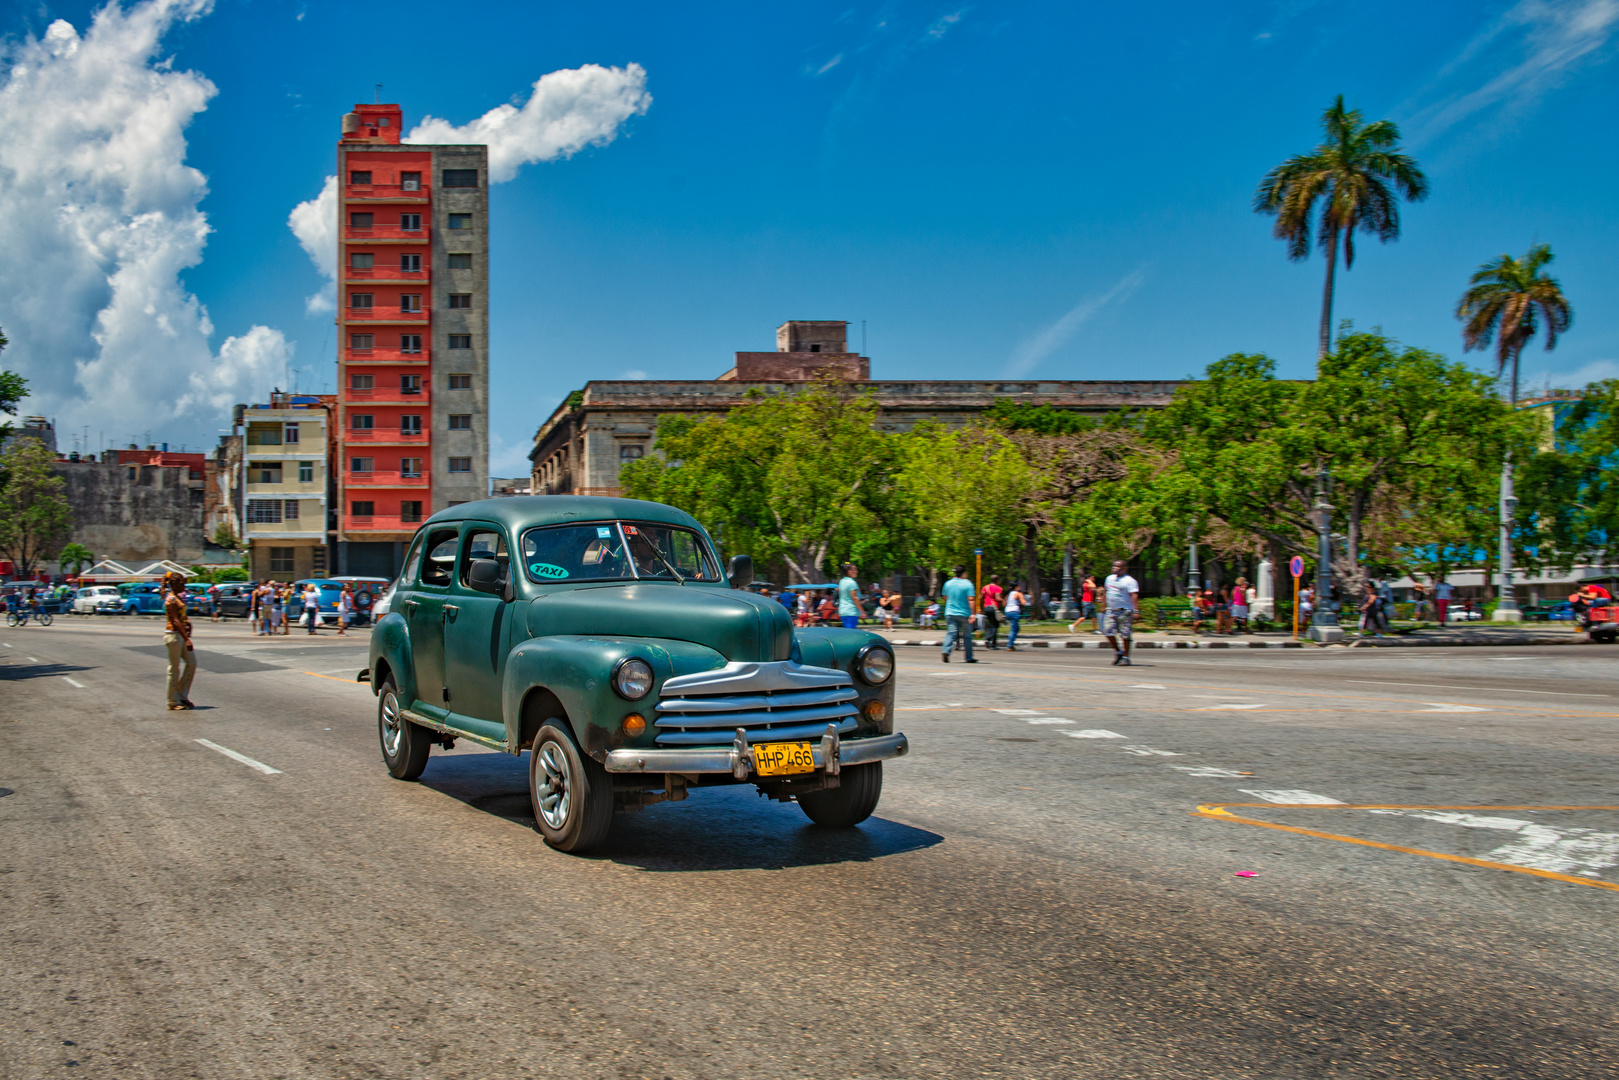 Cuba Street n.4